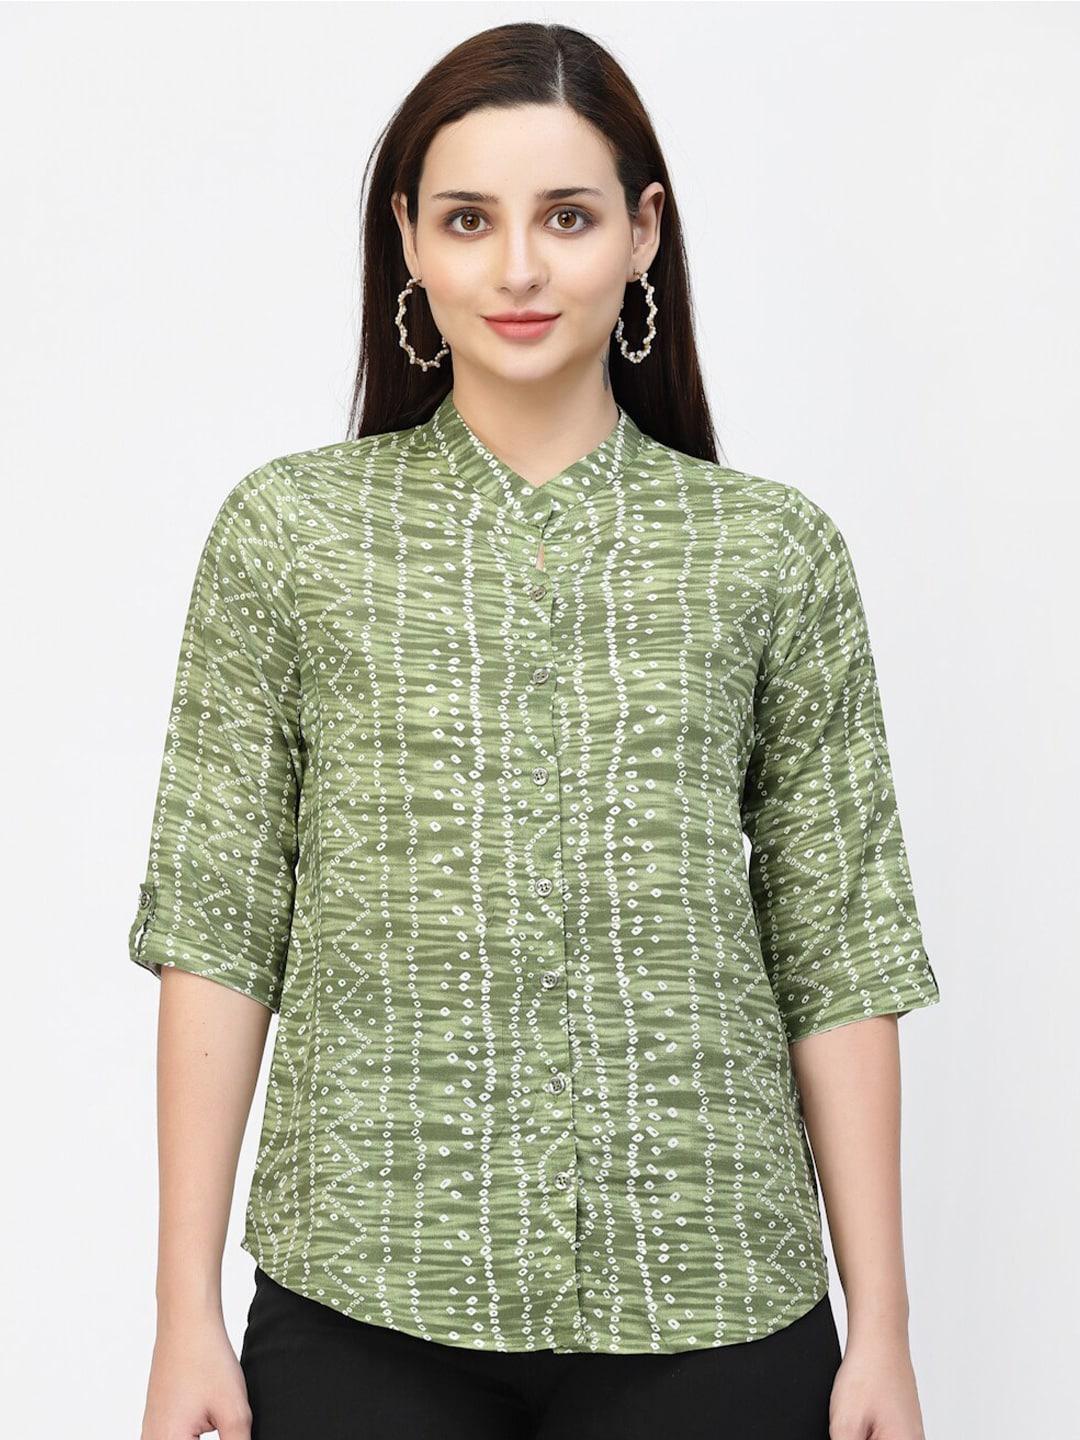 vastraa-fusion-bandhani-printed-mandarin-collar-shirt-style-top